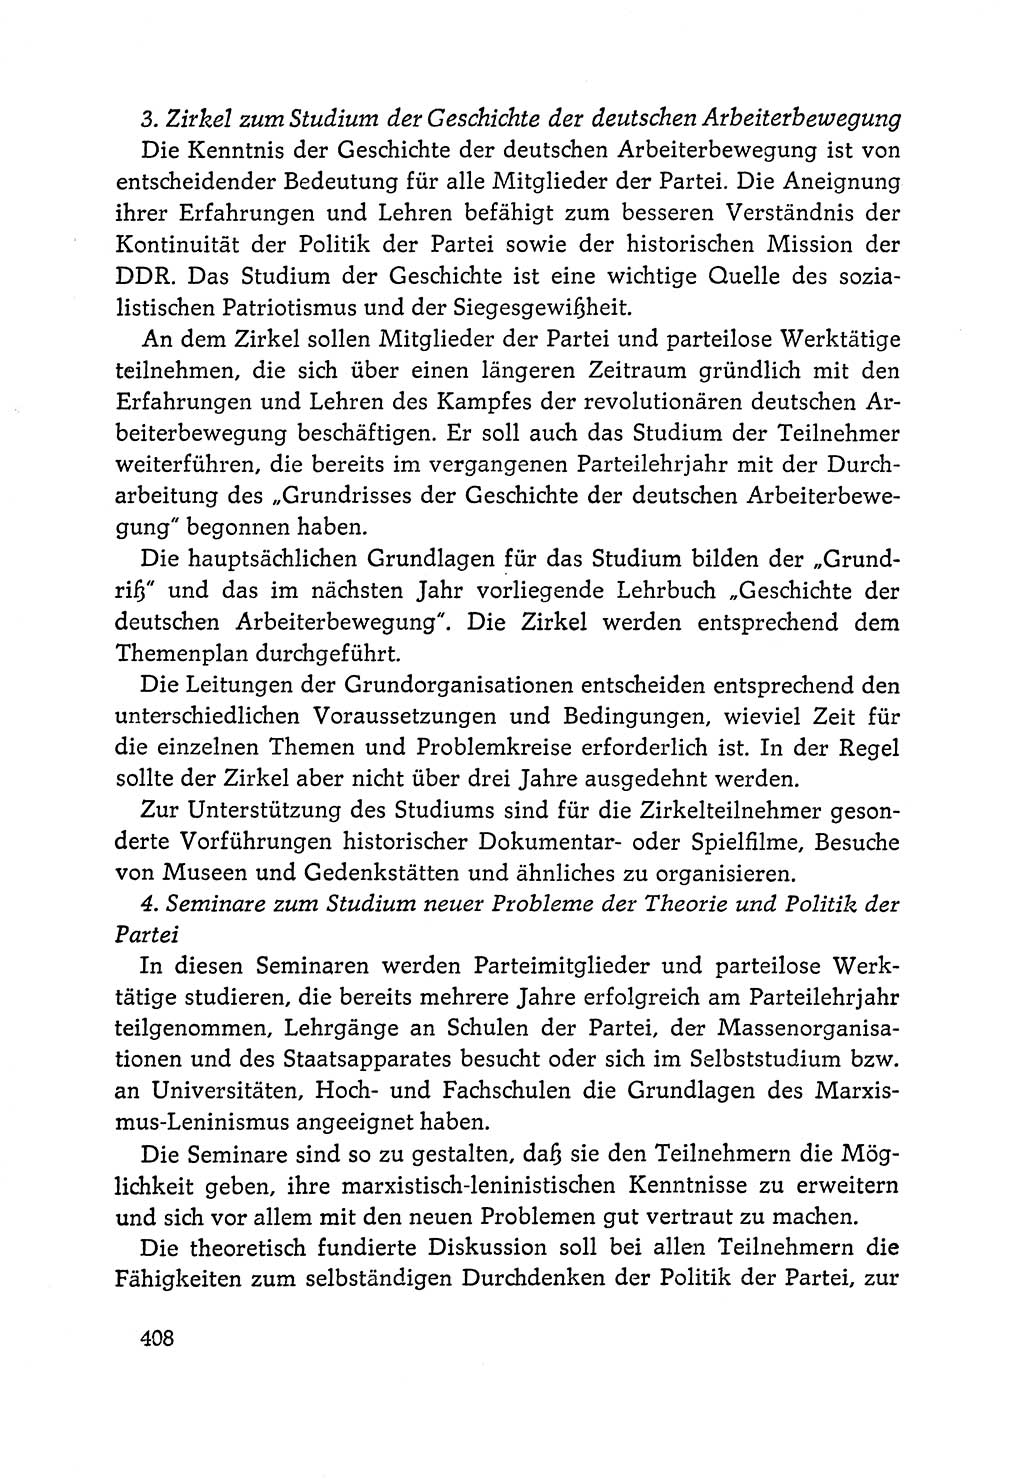 Dokumente der Sozialistischen Einheitspartei Deutschlands (SED) [Deutsche Demokratische Republik (DDR)] 1964-1965, Seite 408 (Dok. SED DDR 1964-1965, S. 408)